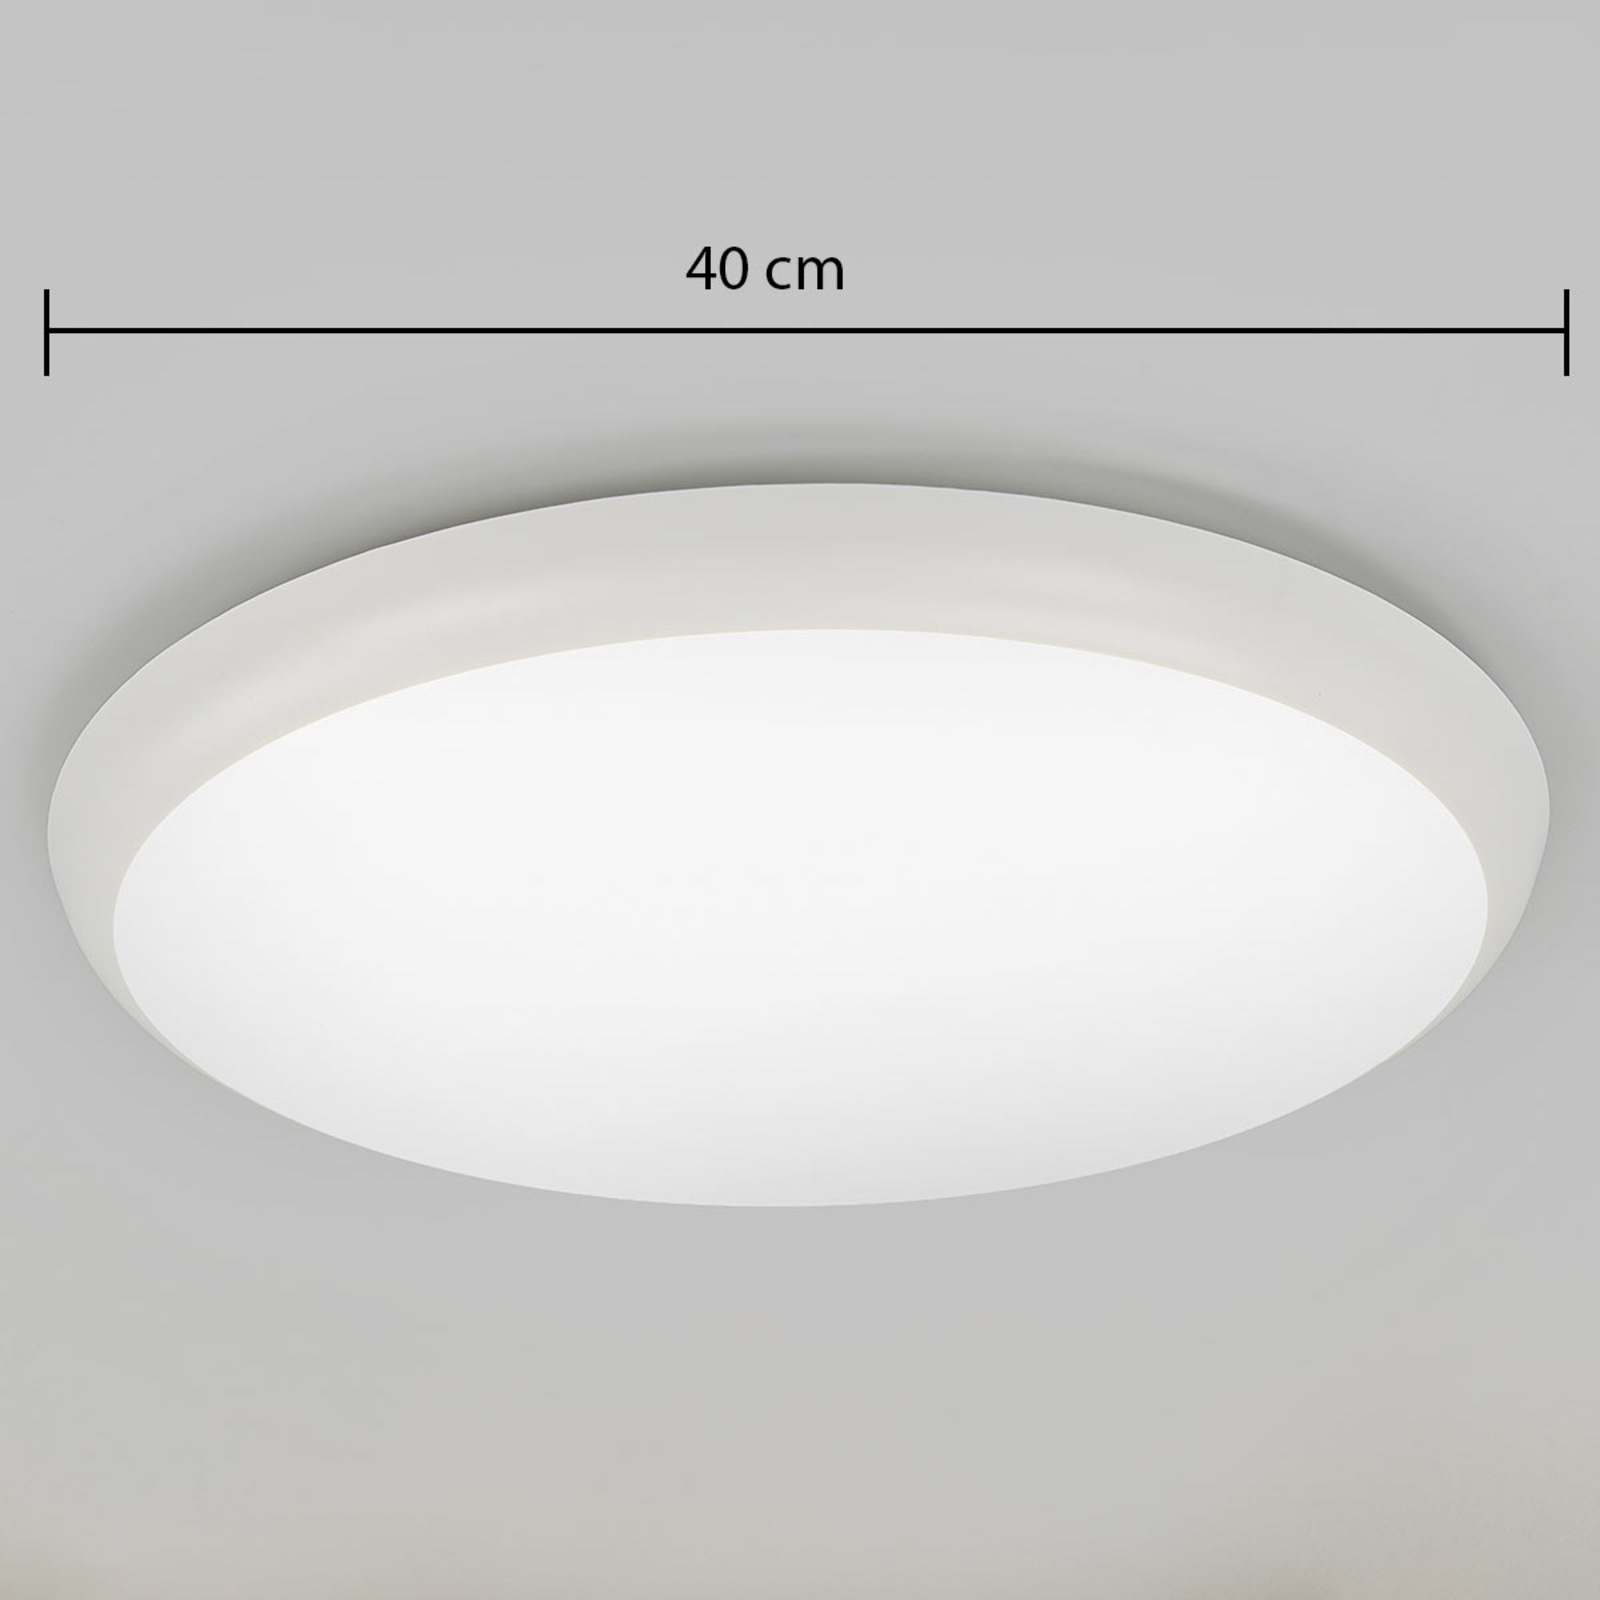 Lampa sufitowa LED Augustin, okrągła, Ø 40 cm